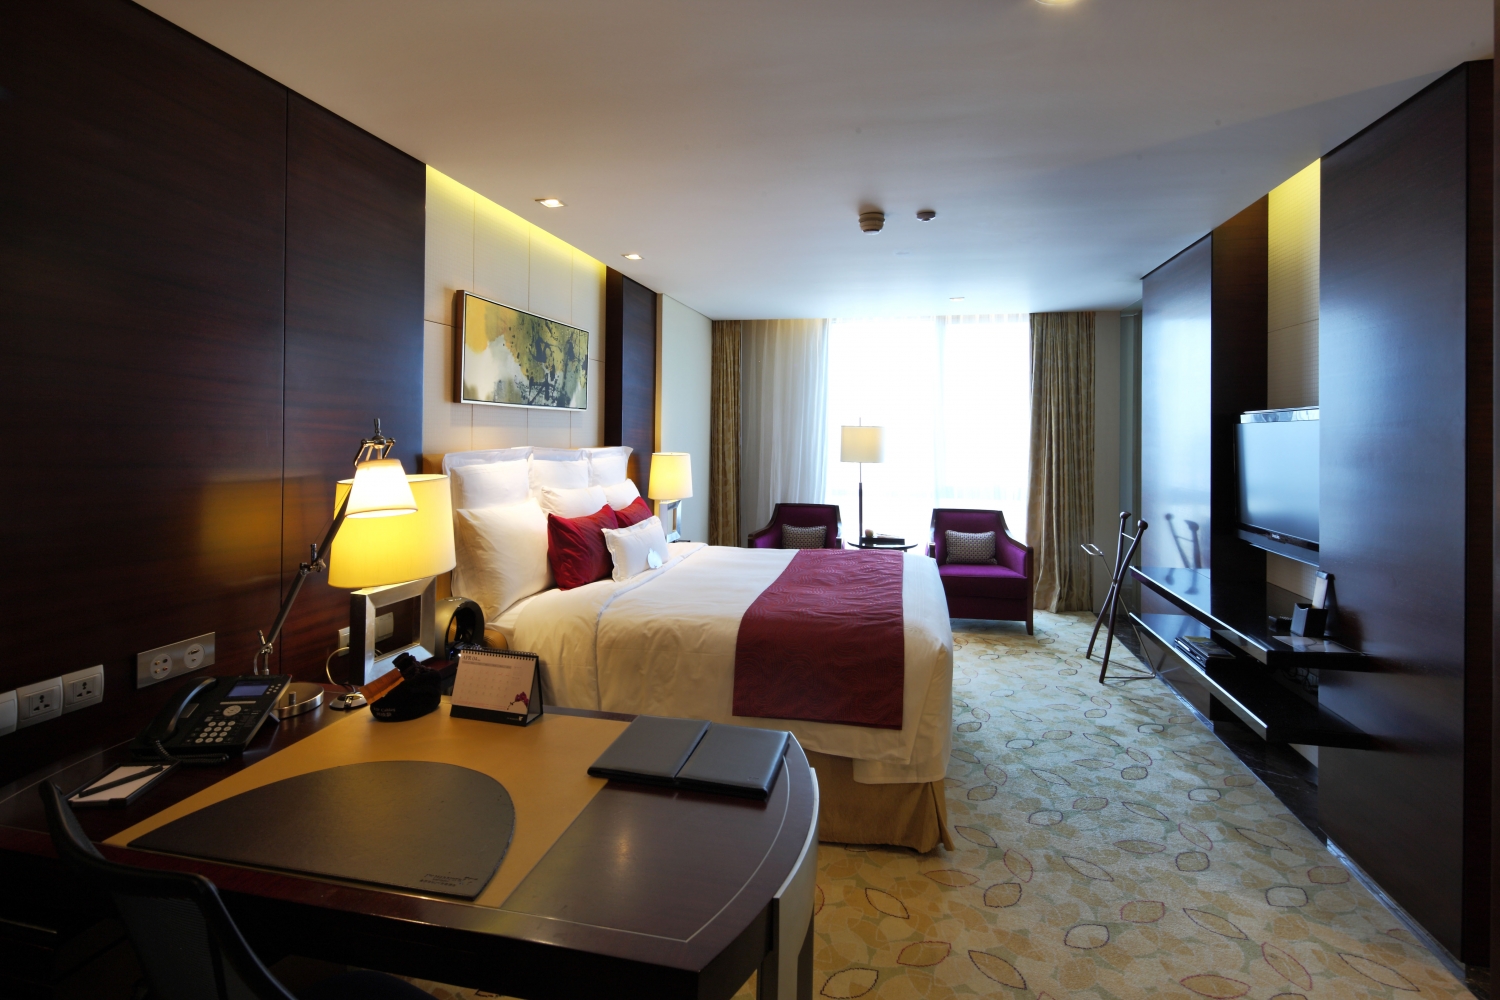 上海宝华万豪酒店 (Shanghai Marriott Hotel Parkview)_豪华型_预订优惠价格_地址位置_联系方式